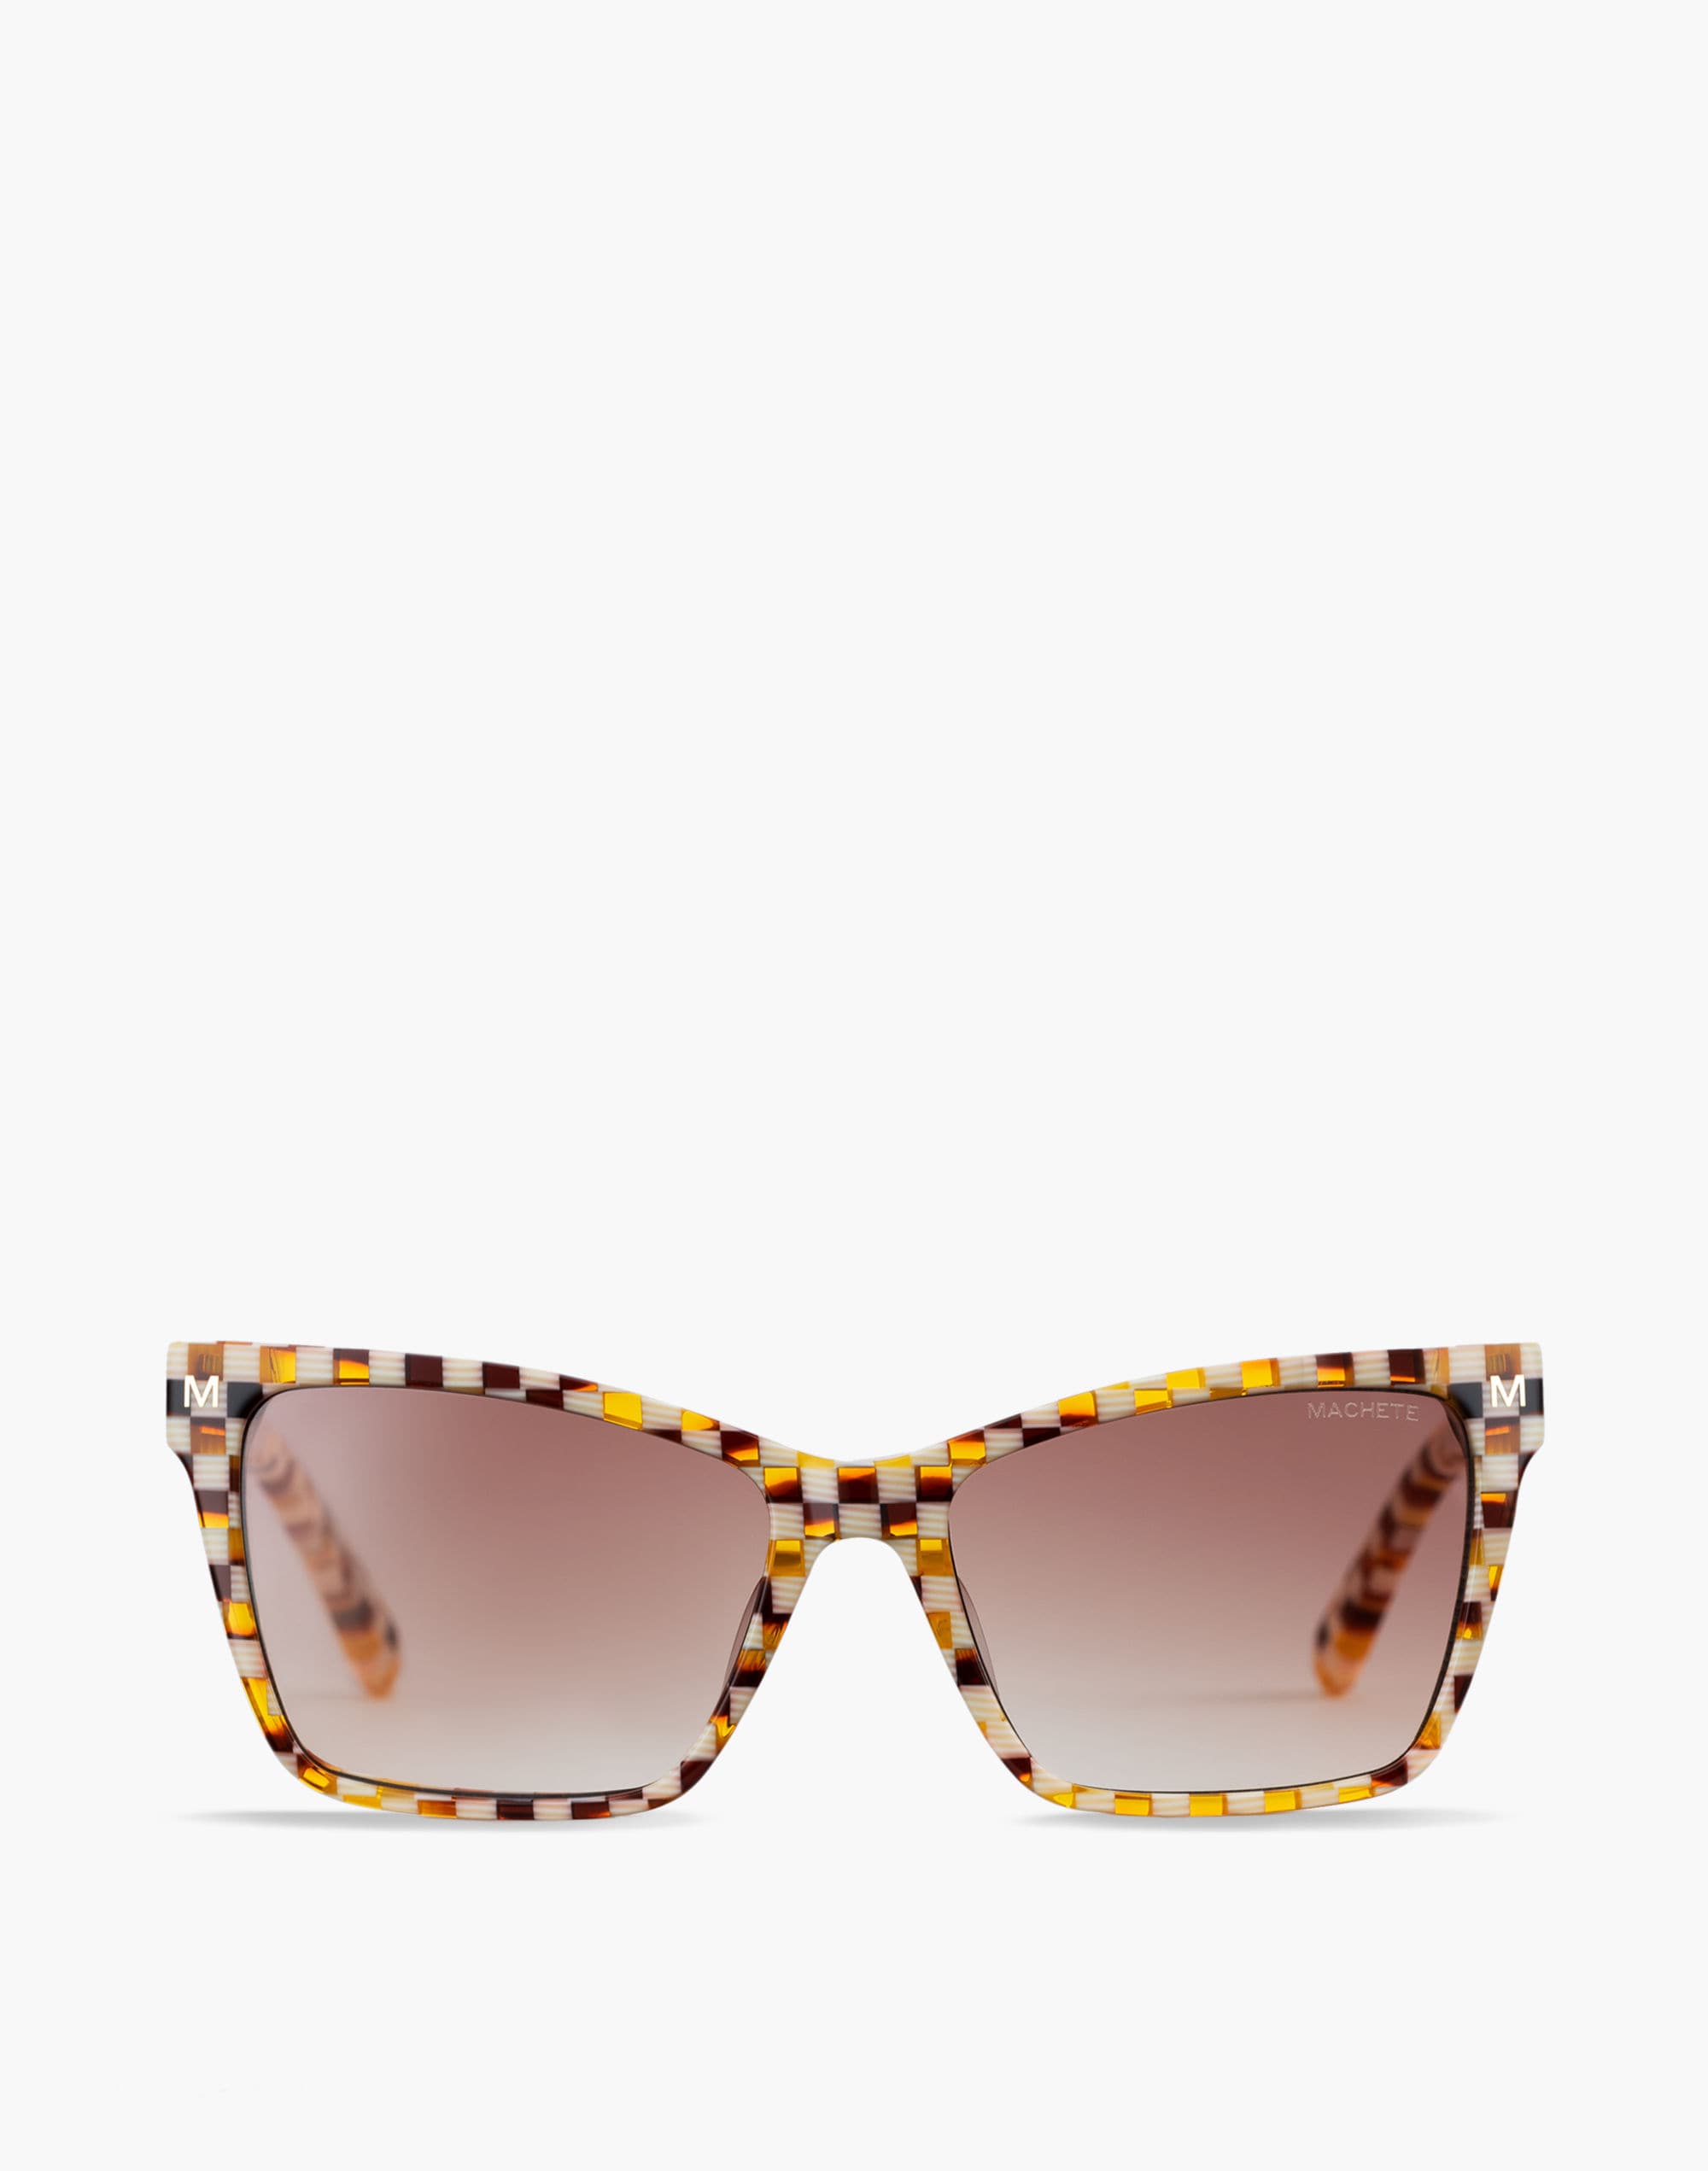 Mw Machete Sally Sunglasses In Brown Multi